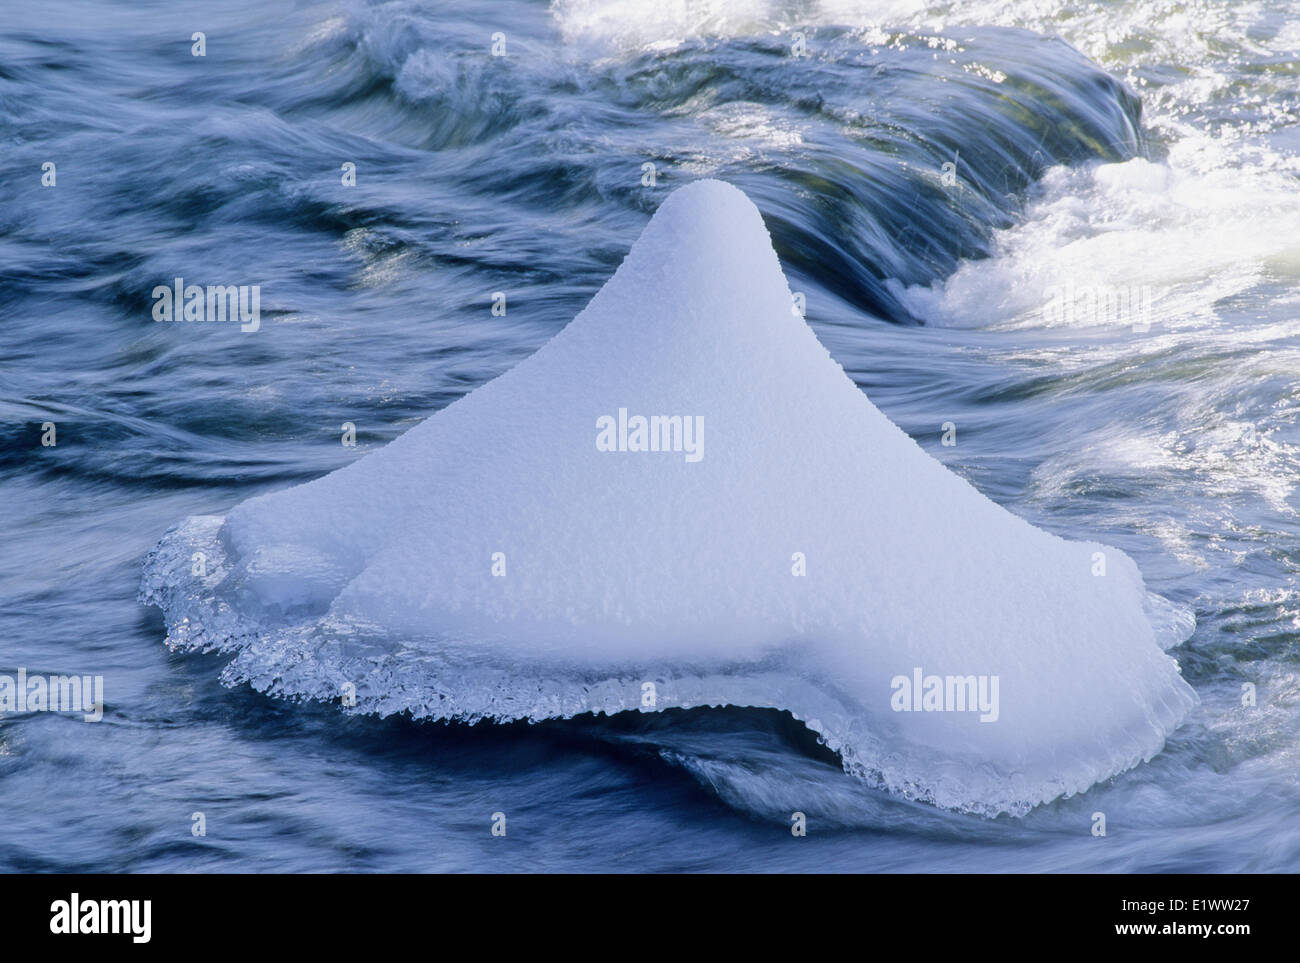 Campana di ghiaccio formazione accade quando acqua continuamente passa sopra e intorno a un oggetto. Neve fresca caduta sul ghiaccio ulteriore Foto Stock